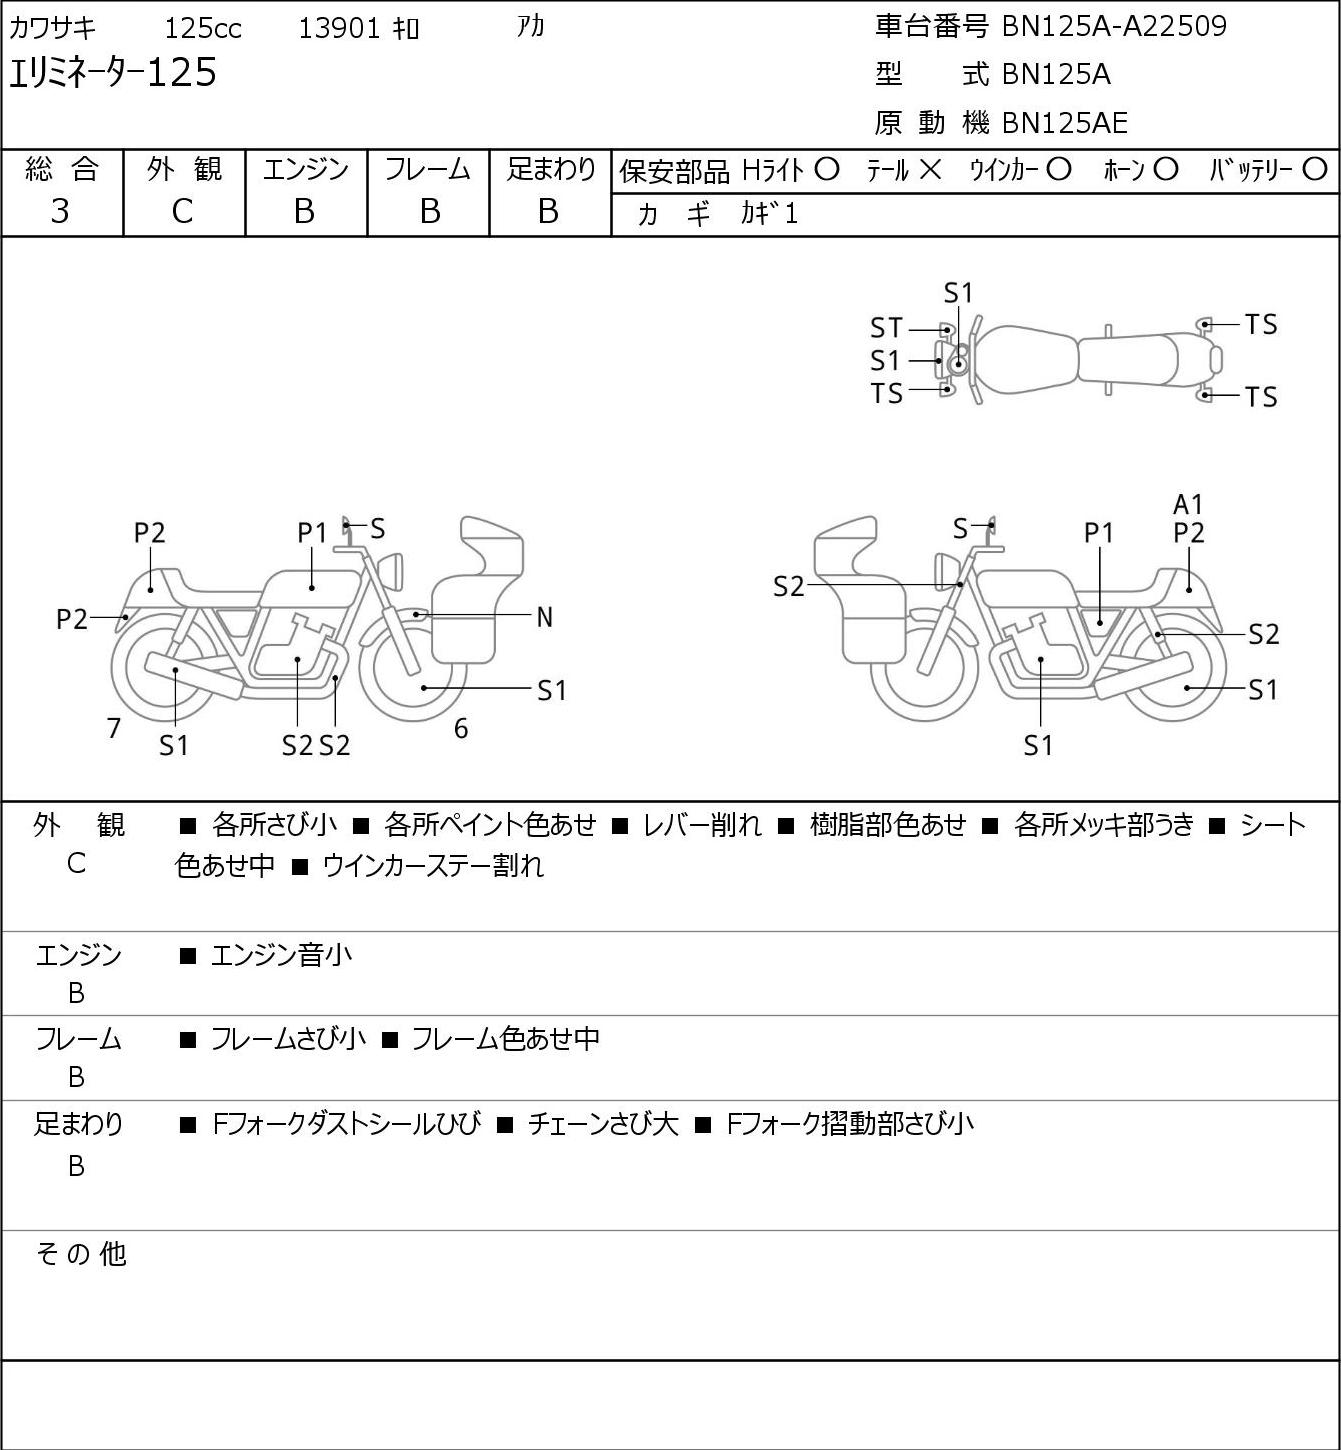 Kawasaki ELIMINATOR 125 BN125A г. 13901